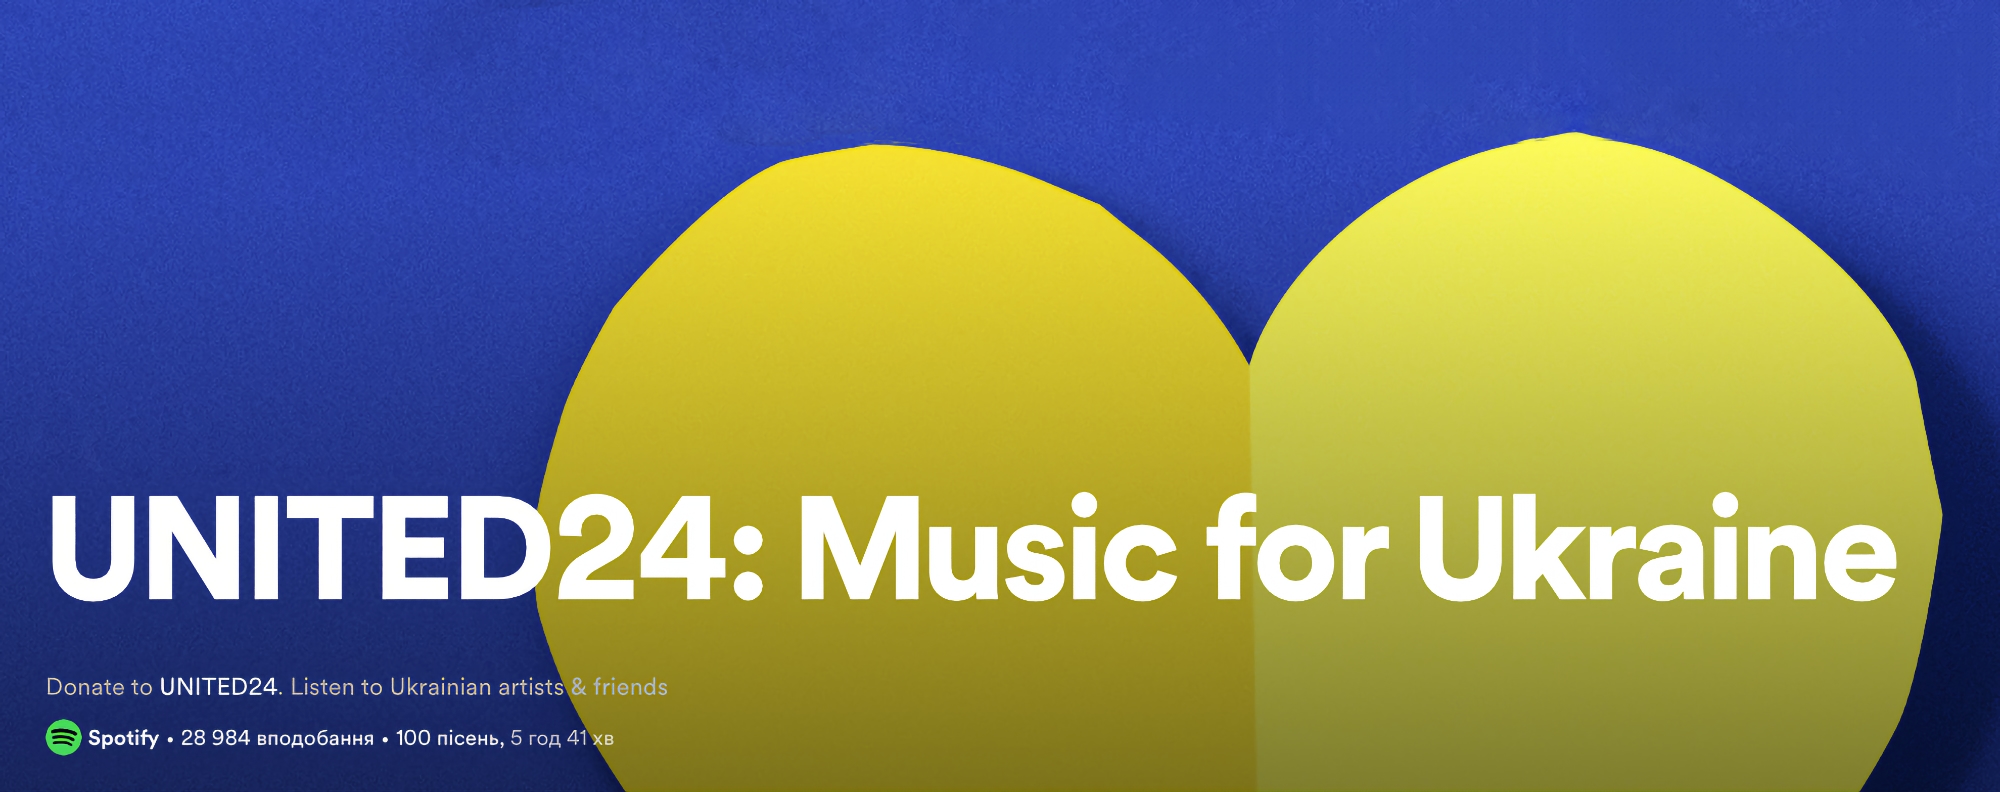 Escucha música y ayuda a los médicos ucranianos: UNITED24 y Spotify crean la lista de reproducción Music for Ukraine